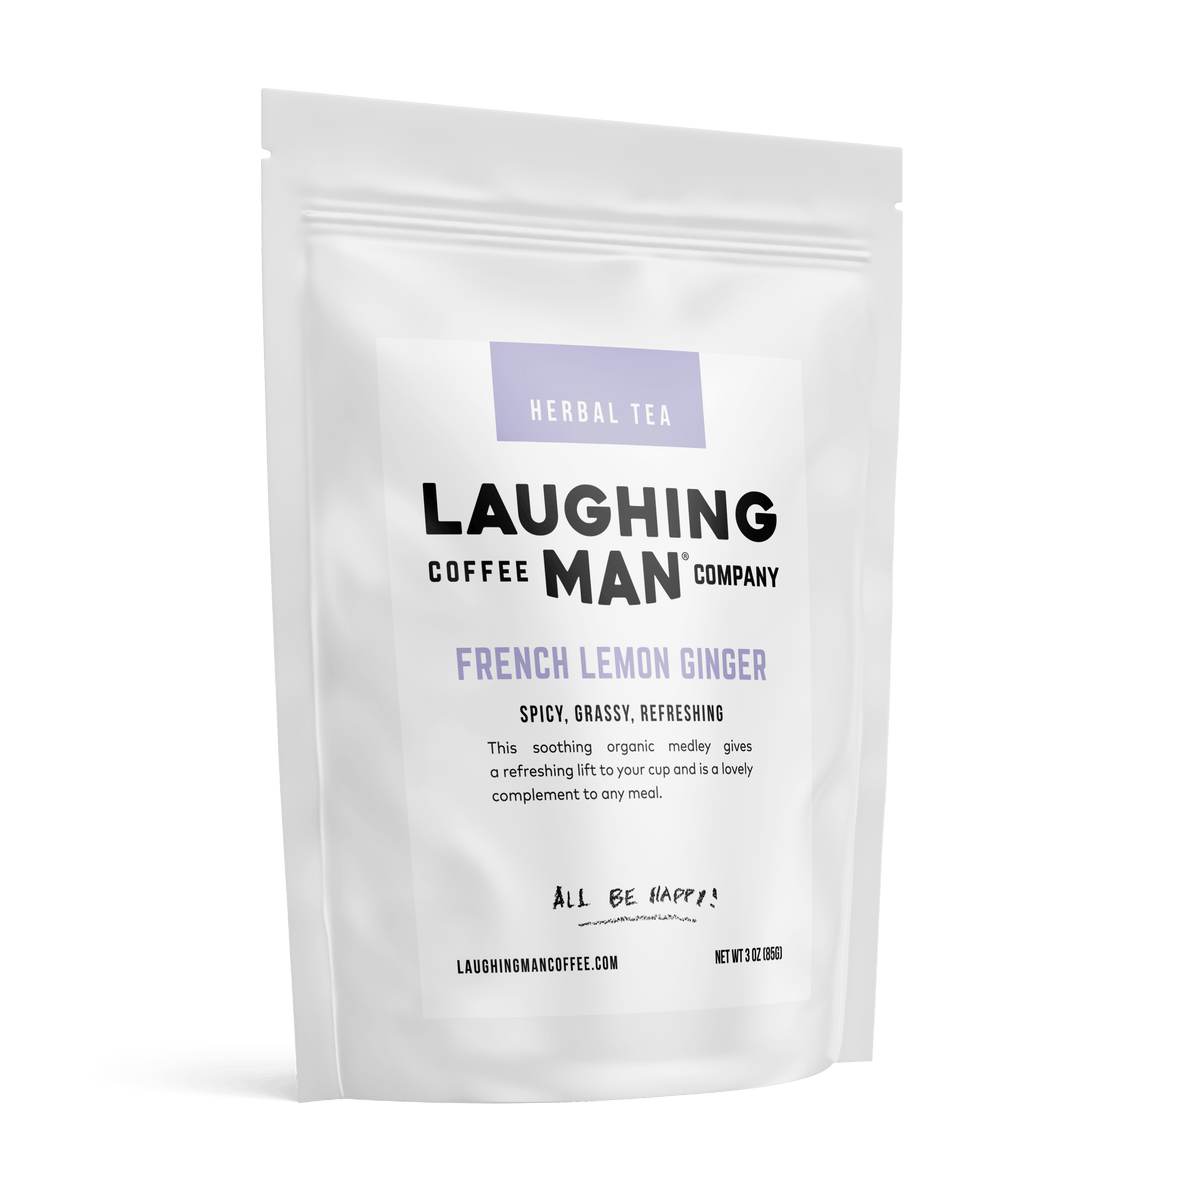 French Lemon Ginger - Laughing Man Coffee